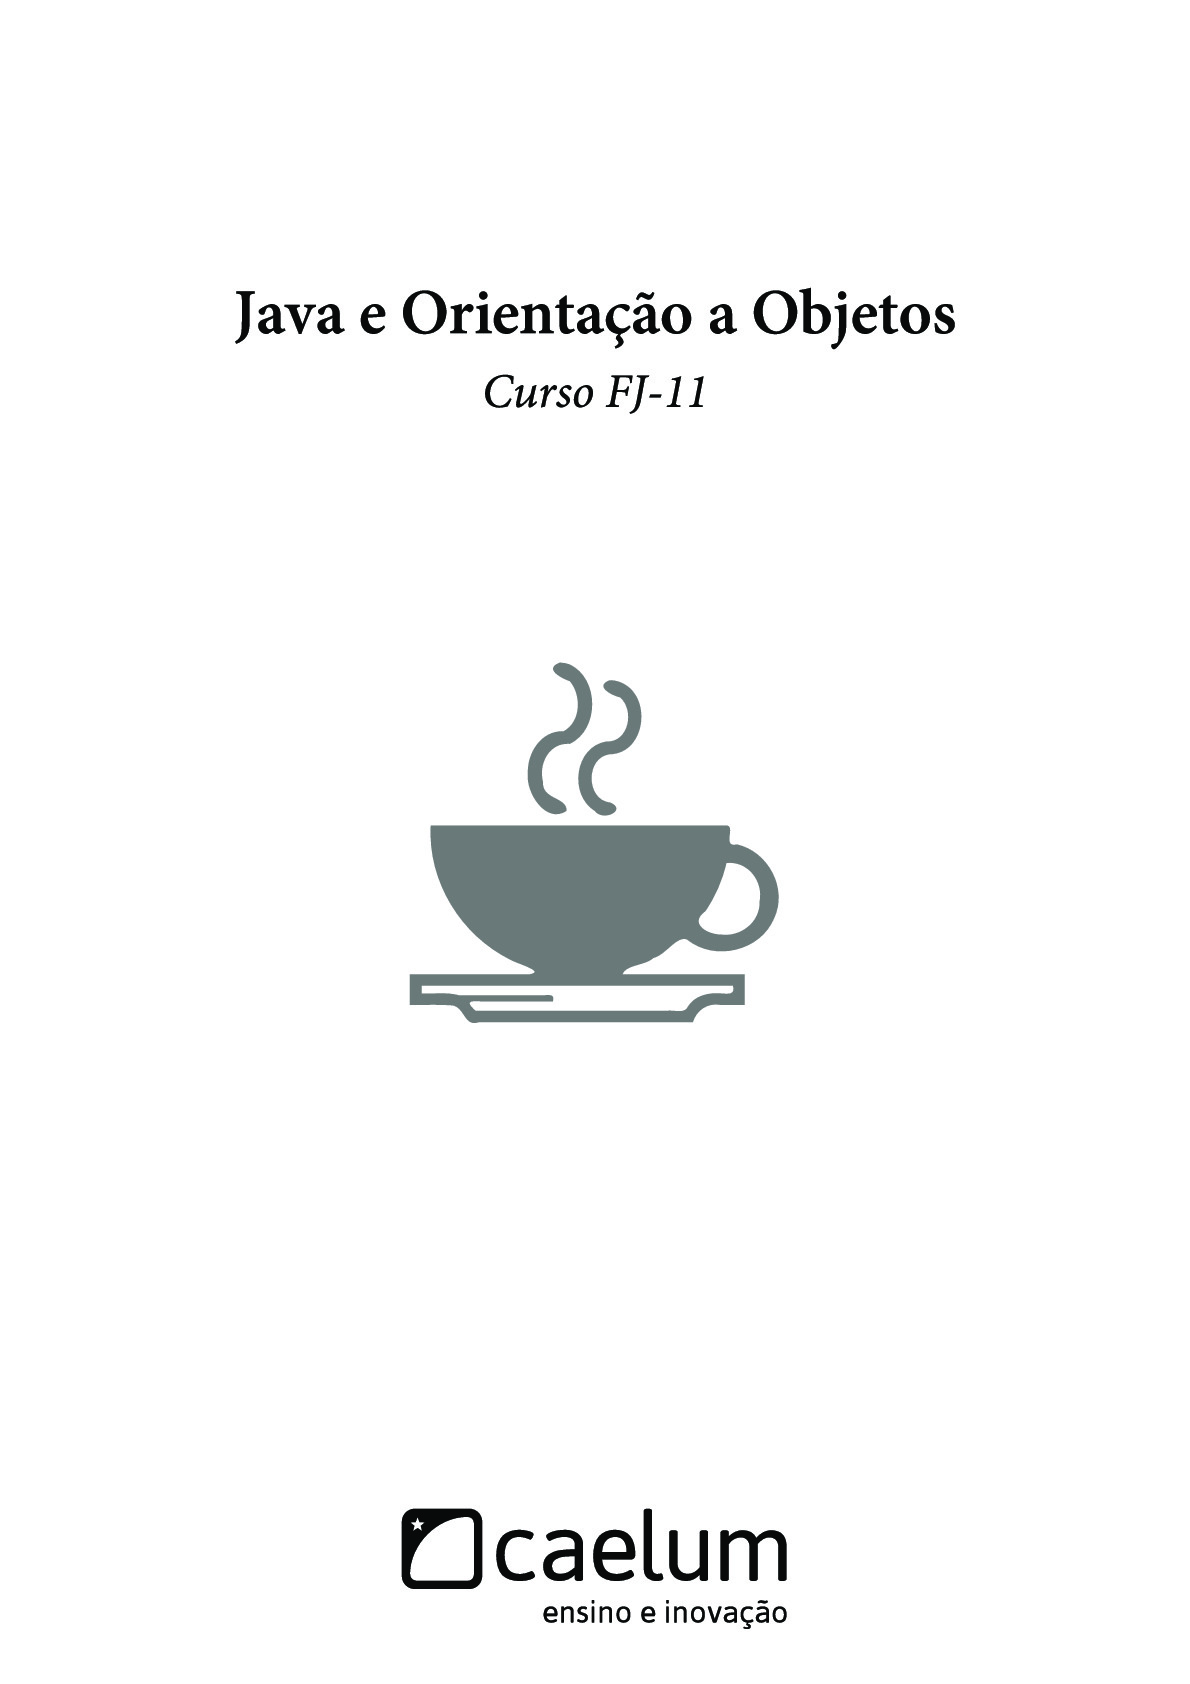 Java e Orientação a Objetos – Caelum, Curso FJ-11